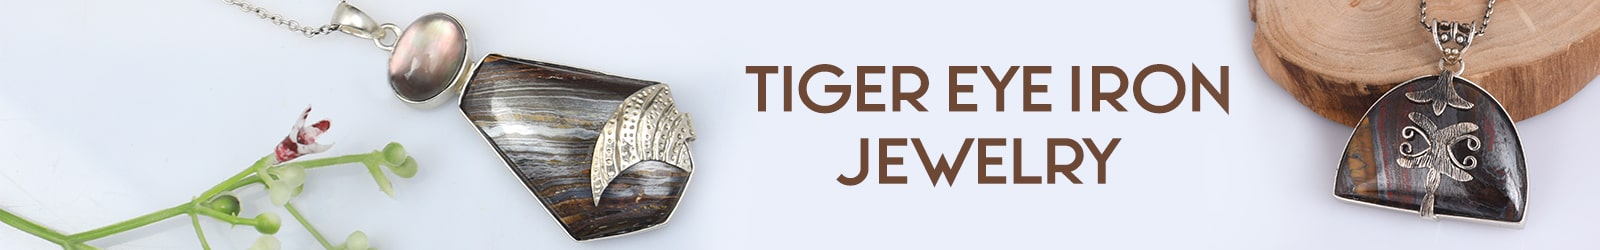 Tiger Eye Iron Jewelry